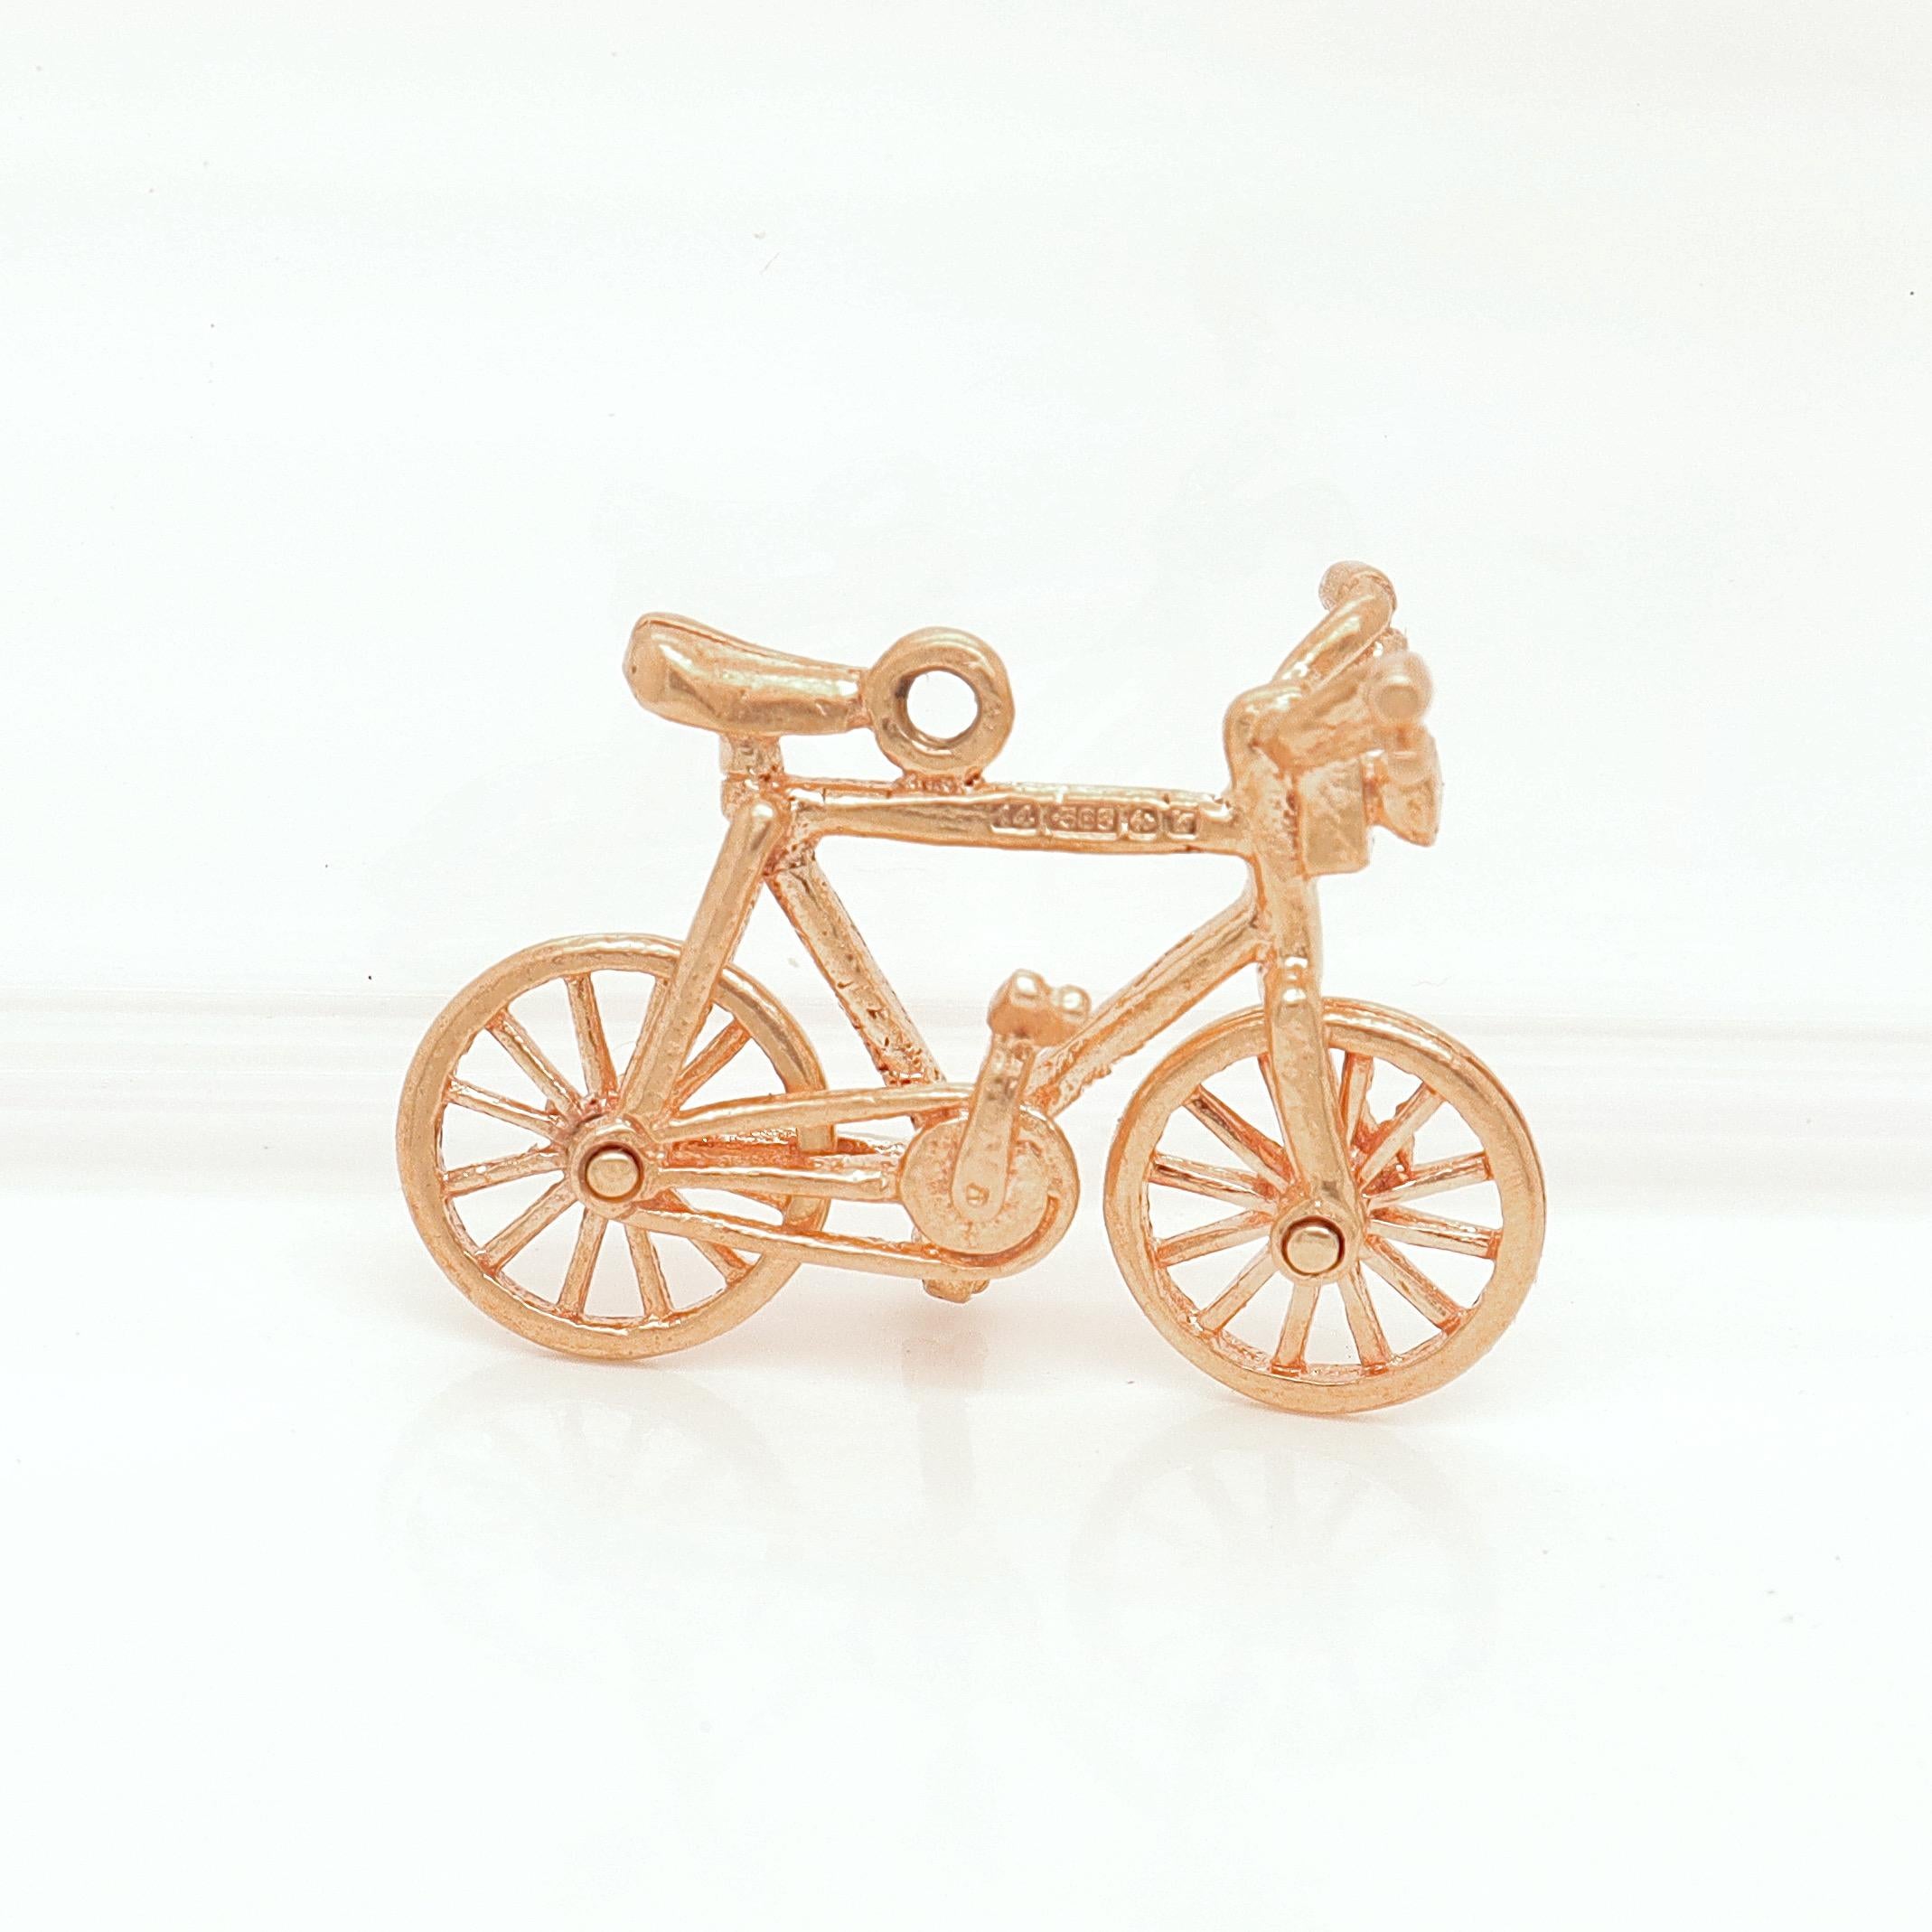 Vintage 14K Gold Figural Bicycle Charm for a Bracelet For Sale 2